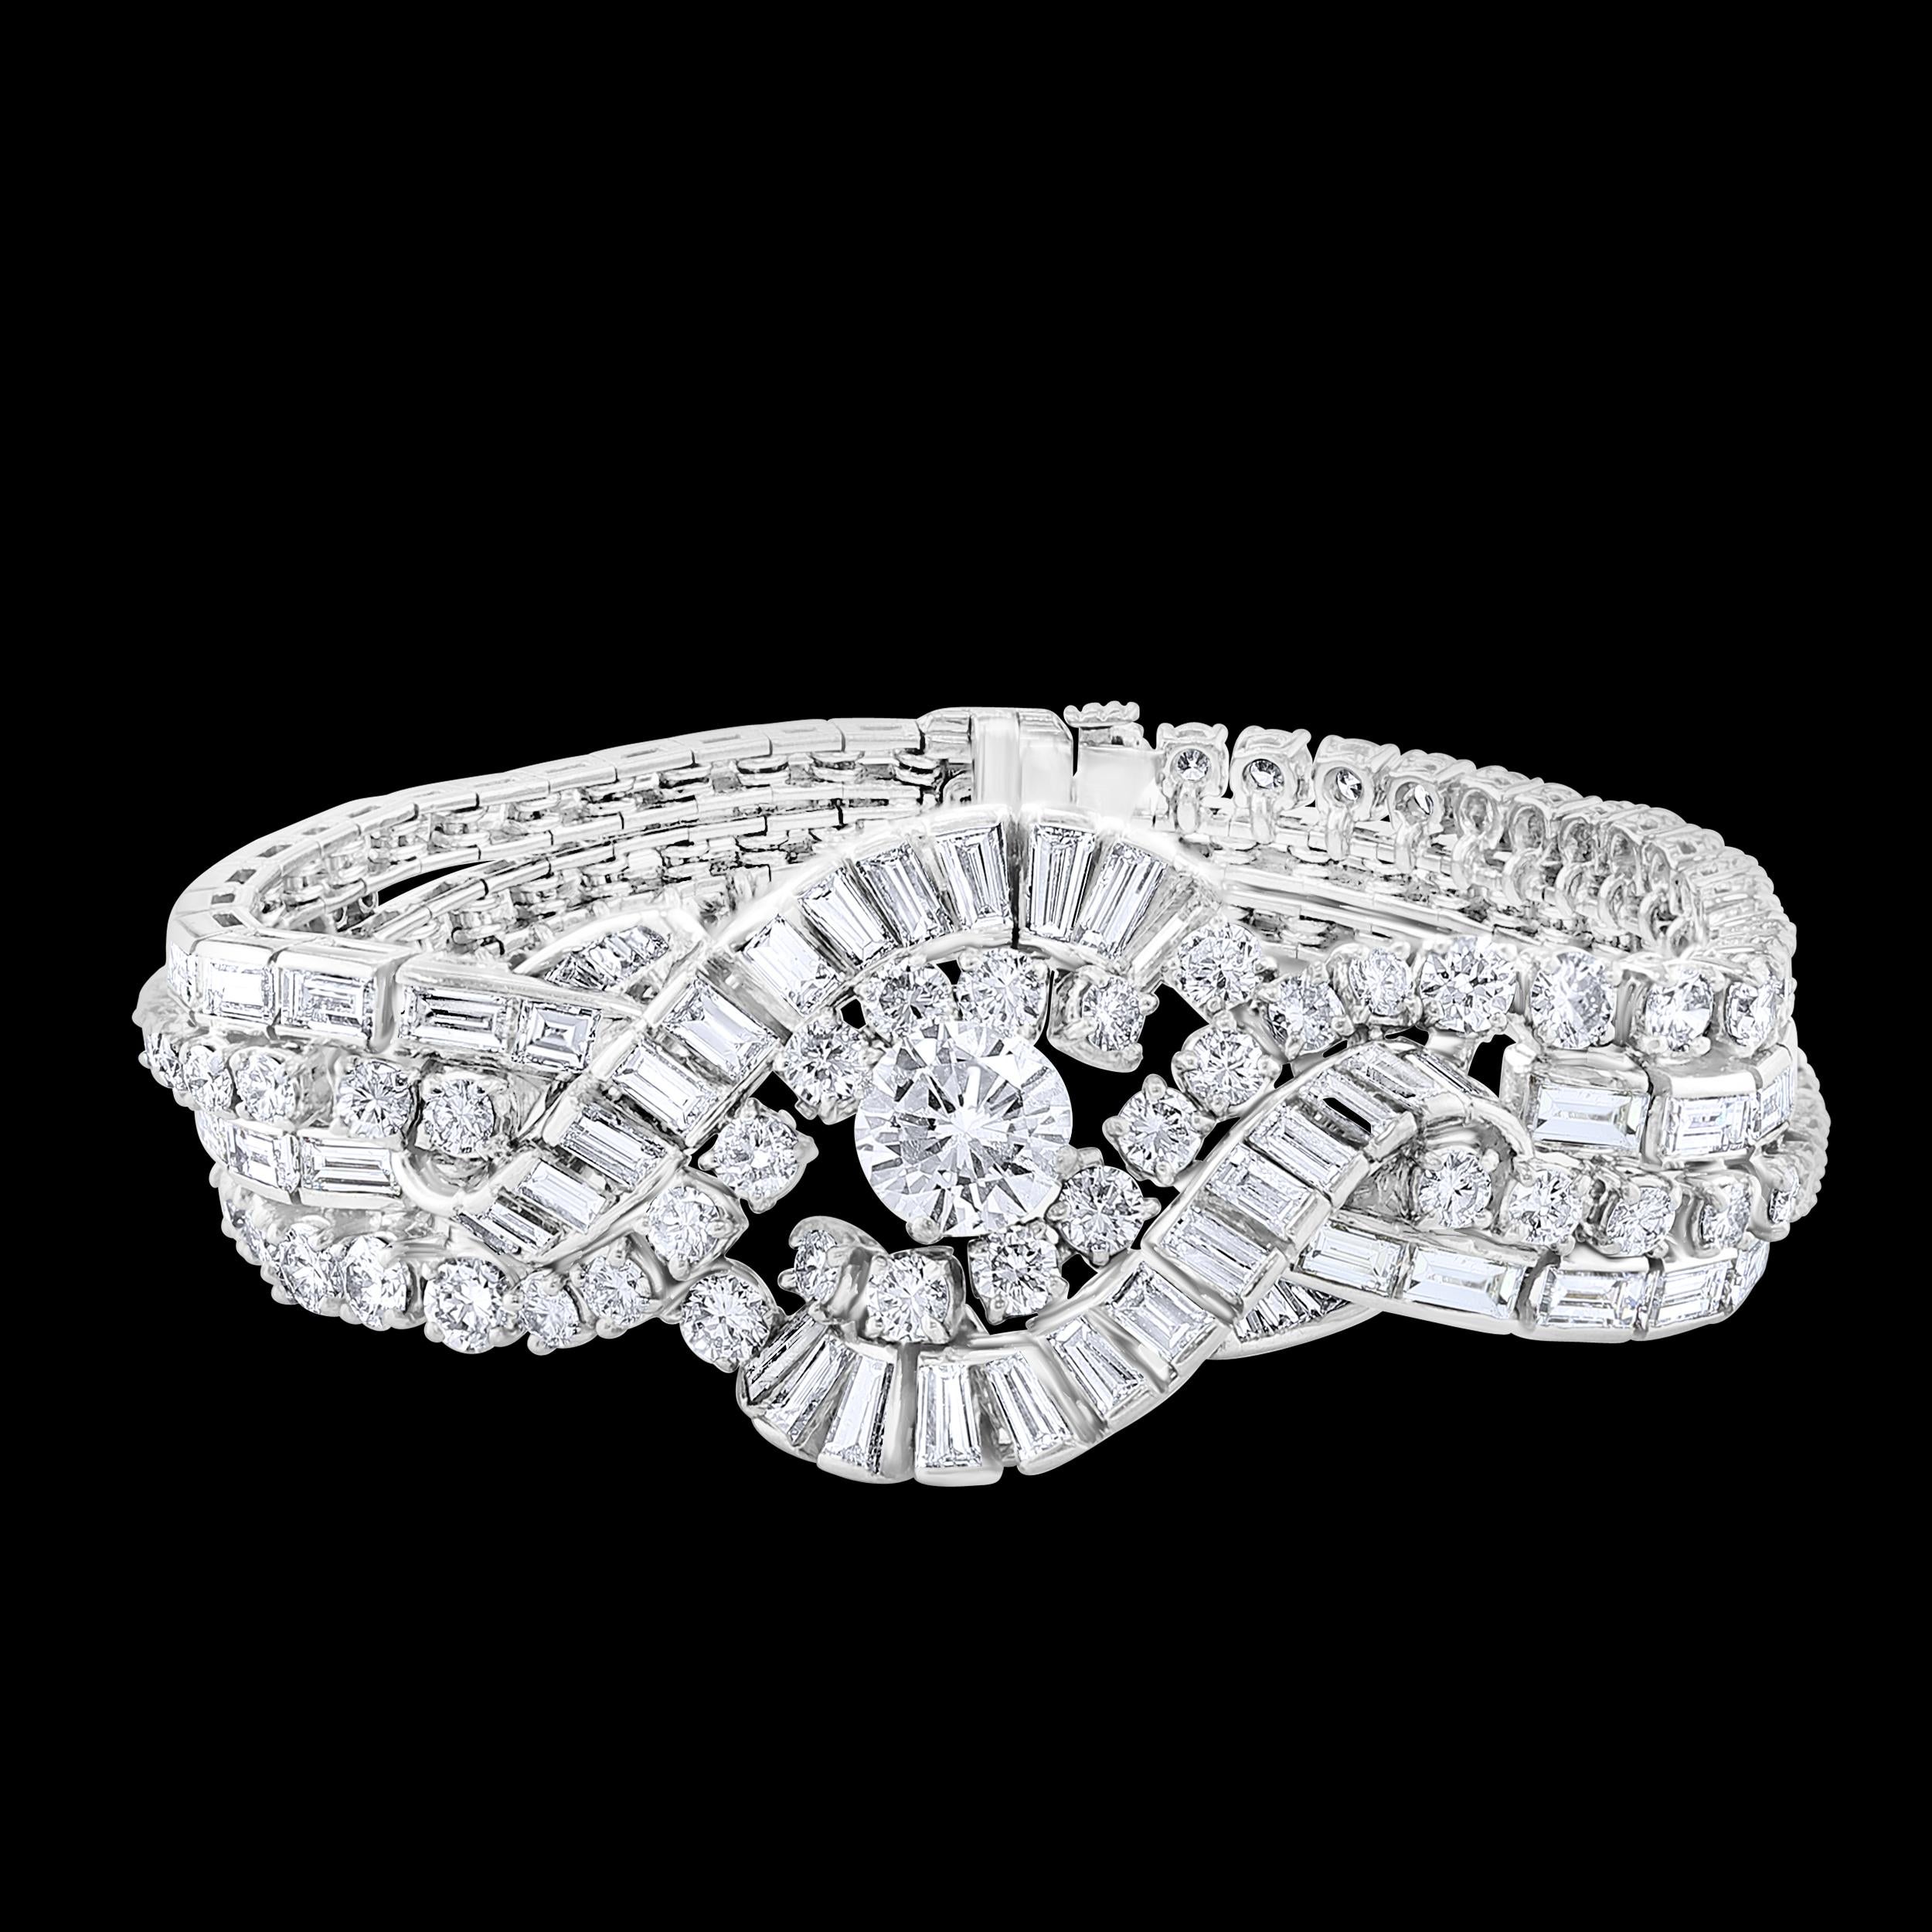 Ein Art Deco  Armband hat eine Mitte Runde Form Solitär Diamant 1,79 ct , GIA zertifiziert 
Das Gesamtkaratgewicht beträgt etwa 32 ct.
Platin 82 Gramm
Großformatige Baguettes und runde Diamanten im Brillantschliff 
Sein stilvolles Design und sein